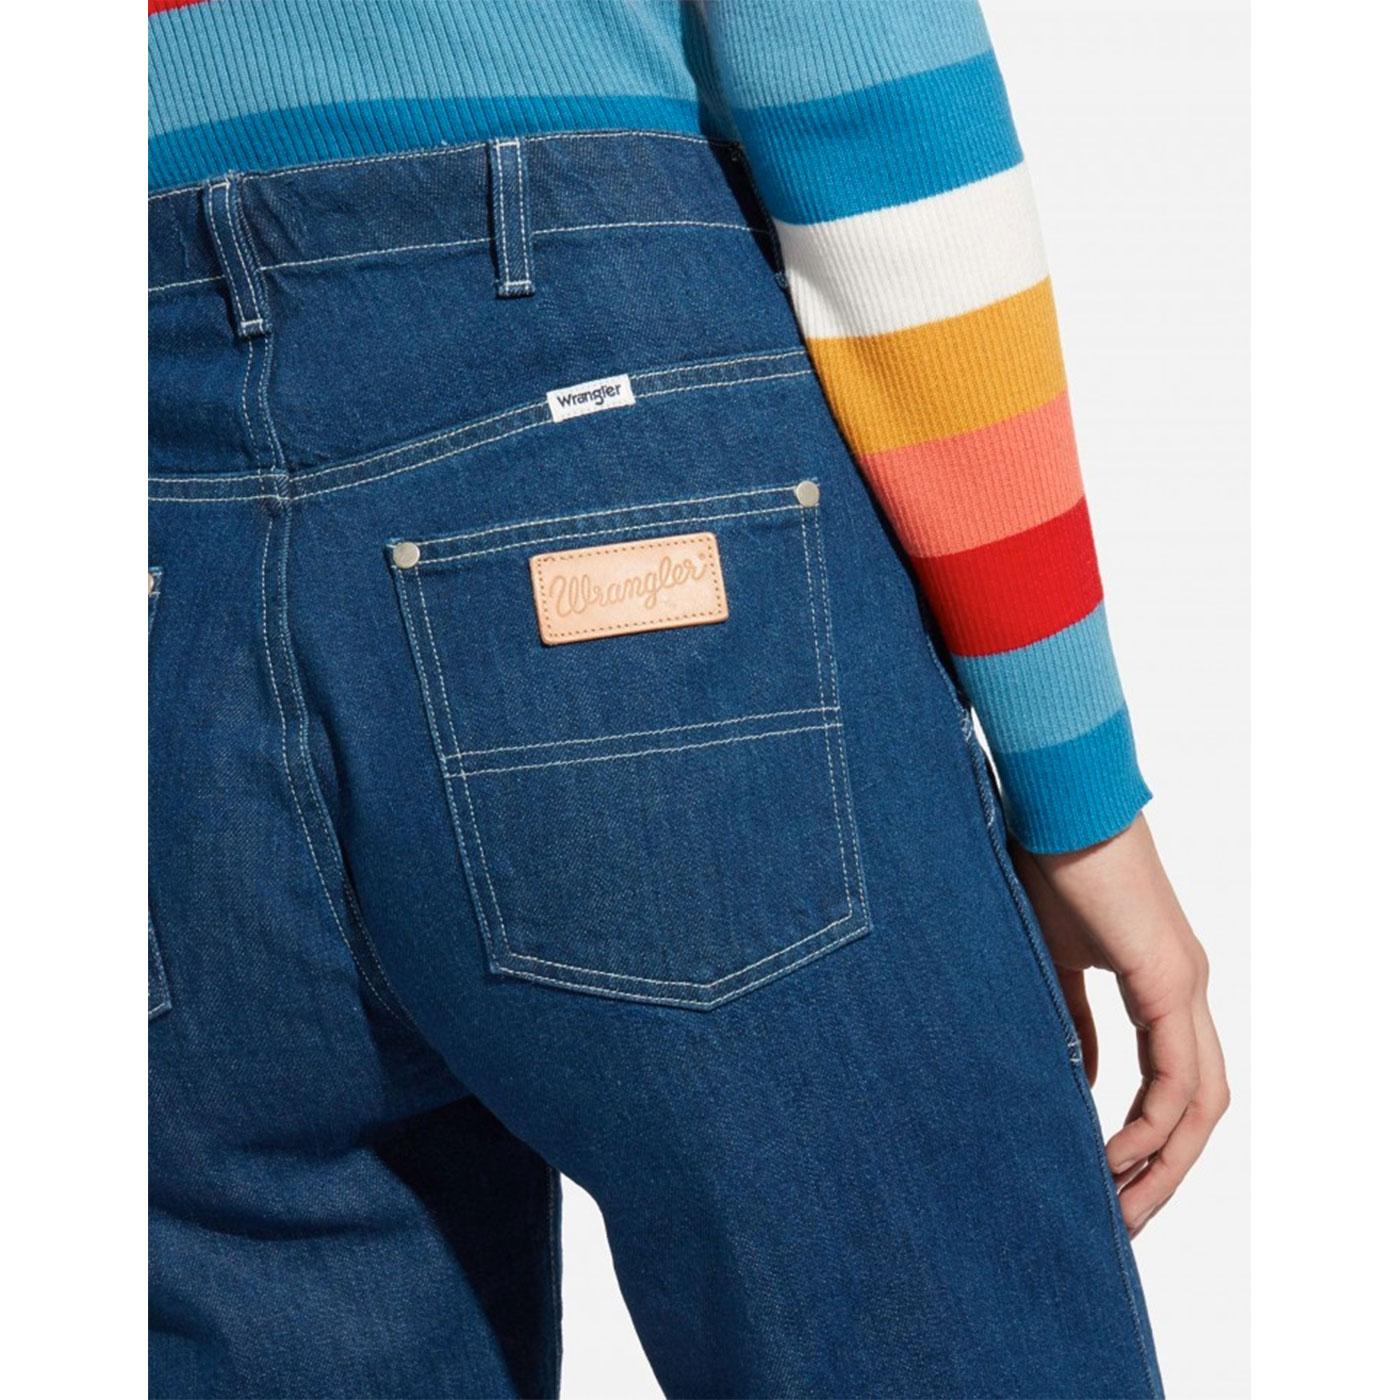 WRANGLER Women's Carpenter Pants Retro 70s Jeans